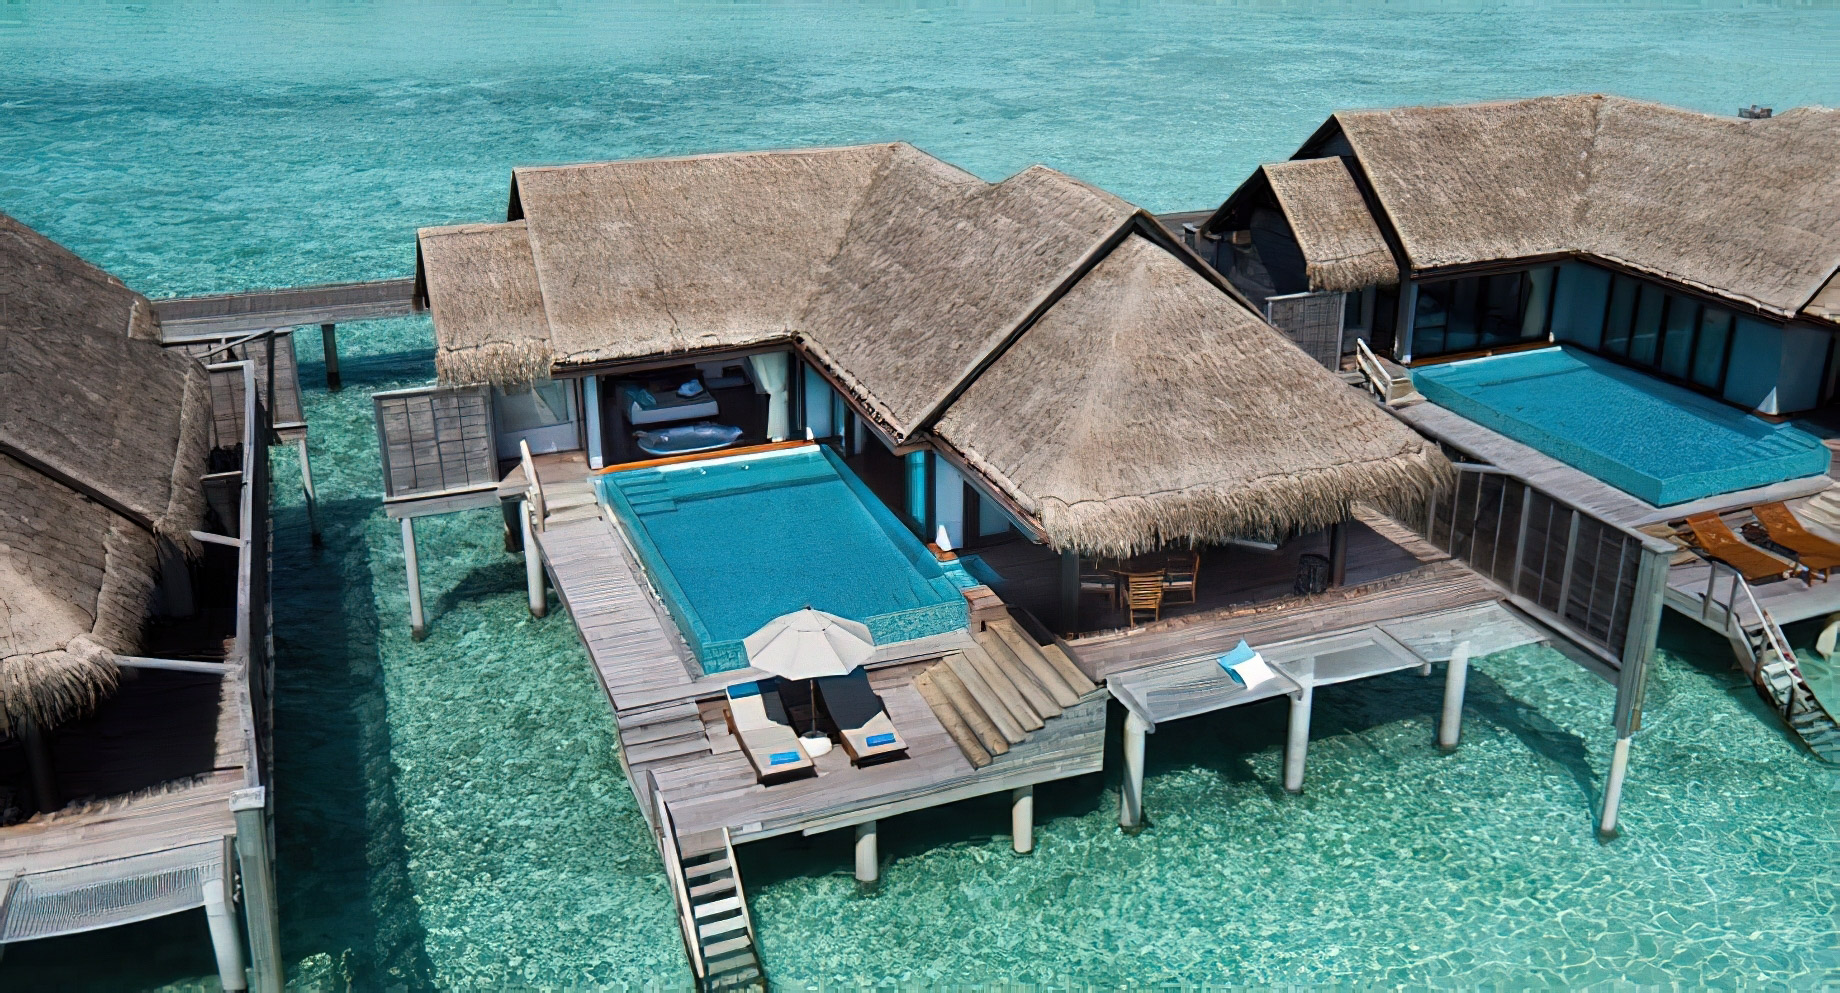 Anantara Kihavah Maldives Villas Resort – Baa Atoll, Maldives – Over Water Pool Villa Aerial View